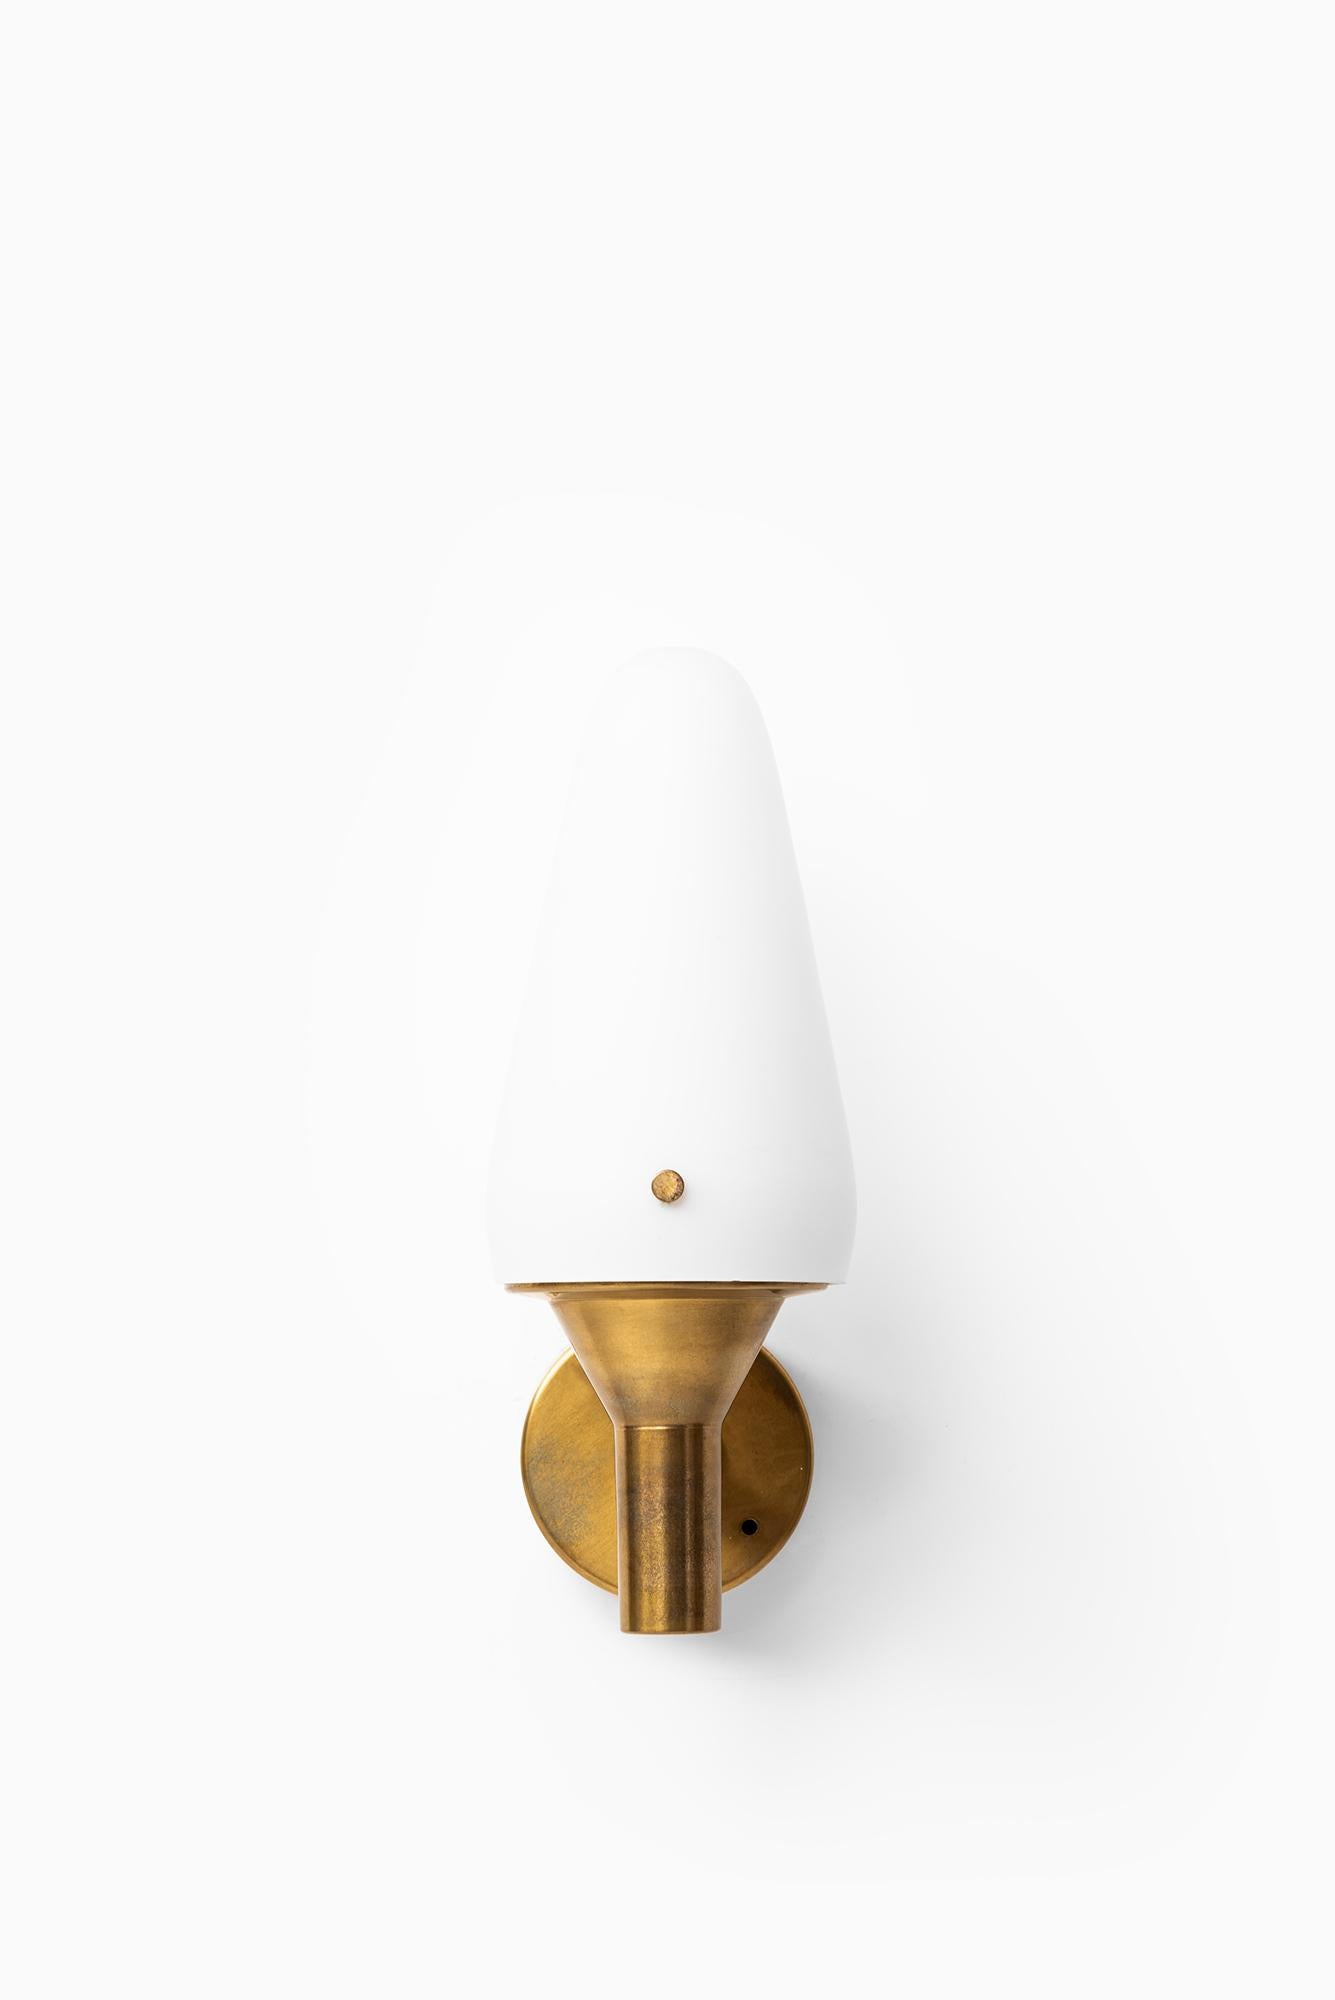 Seltene und frühe Wandlampen, entworfen von Hans-Agne Jakobsson. Produziert von Hans-Agne Jakobsson in Markaryd, Schweden.